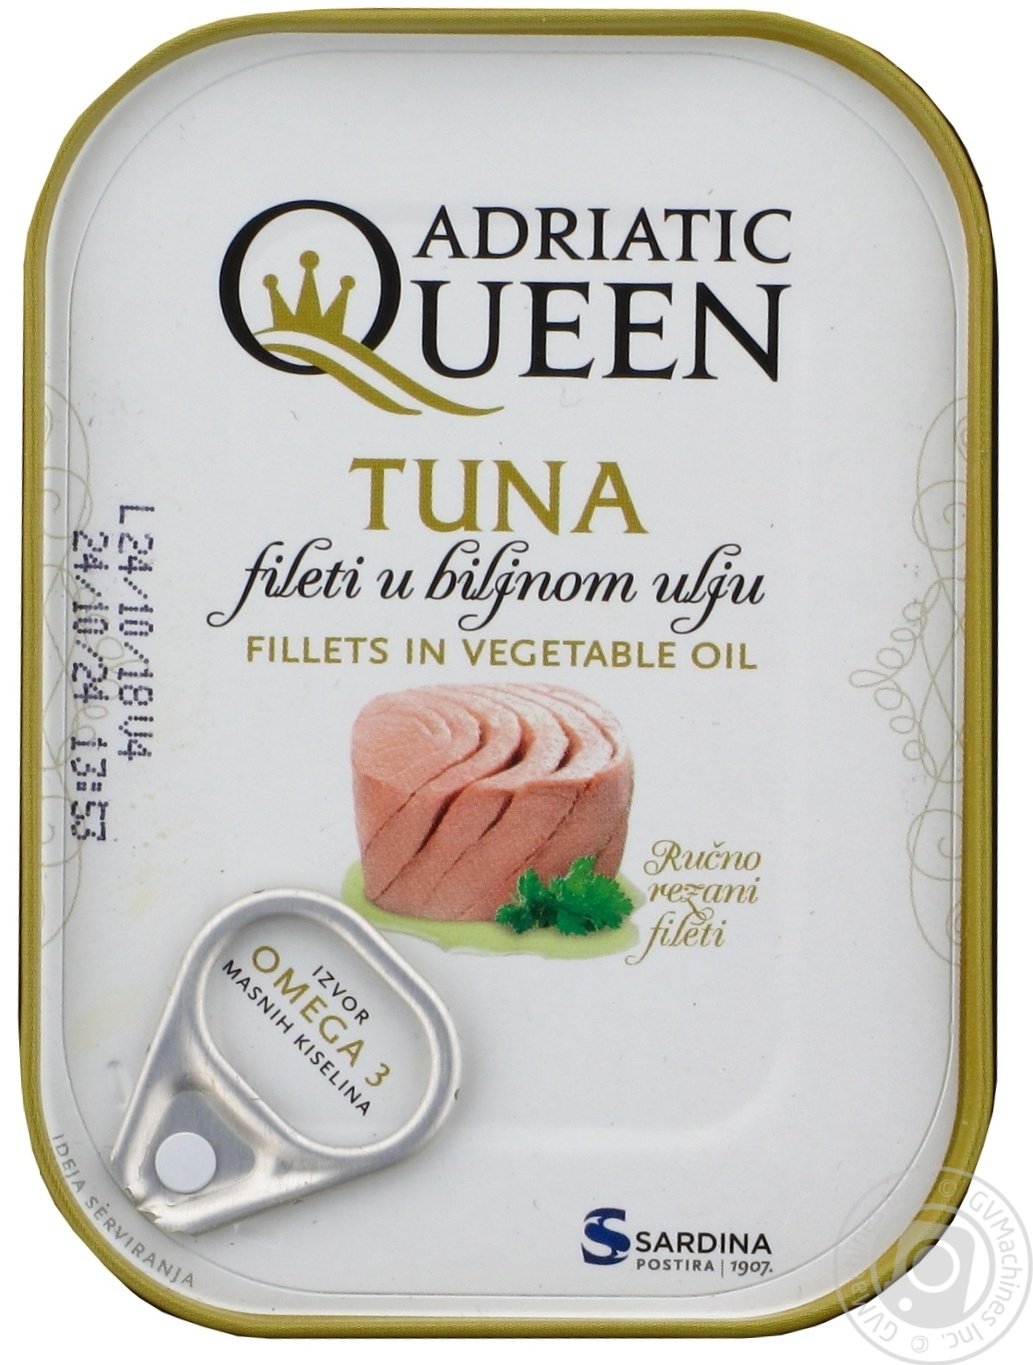 aga>Adriatic Queen Tuna in Oil 100g